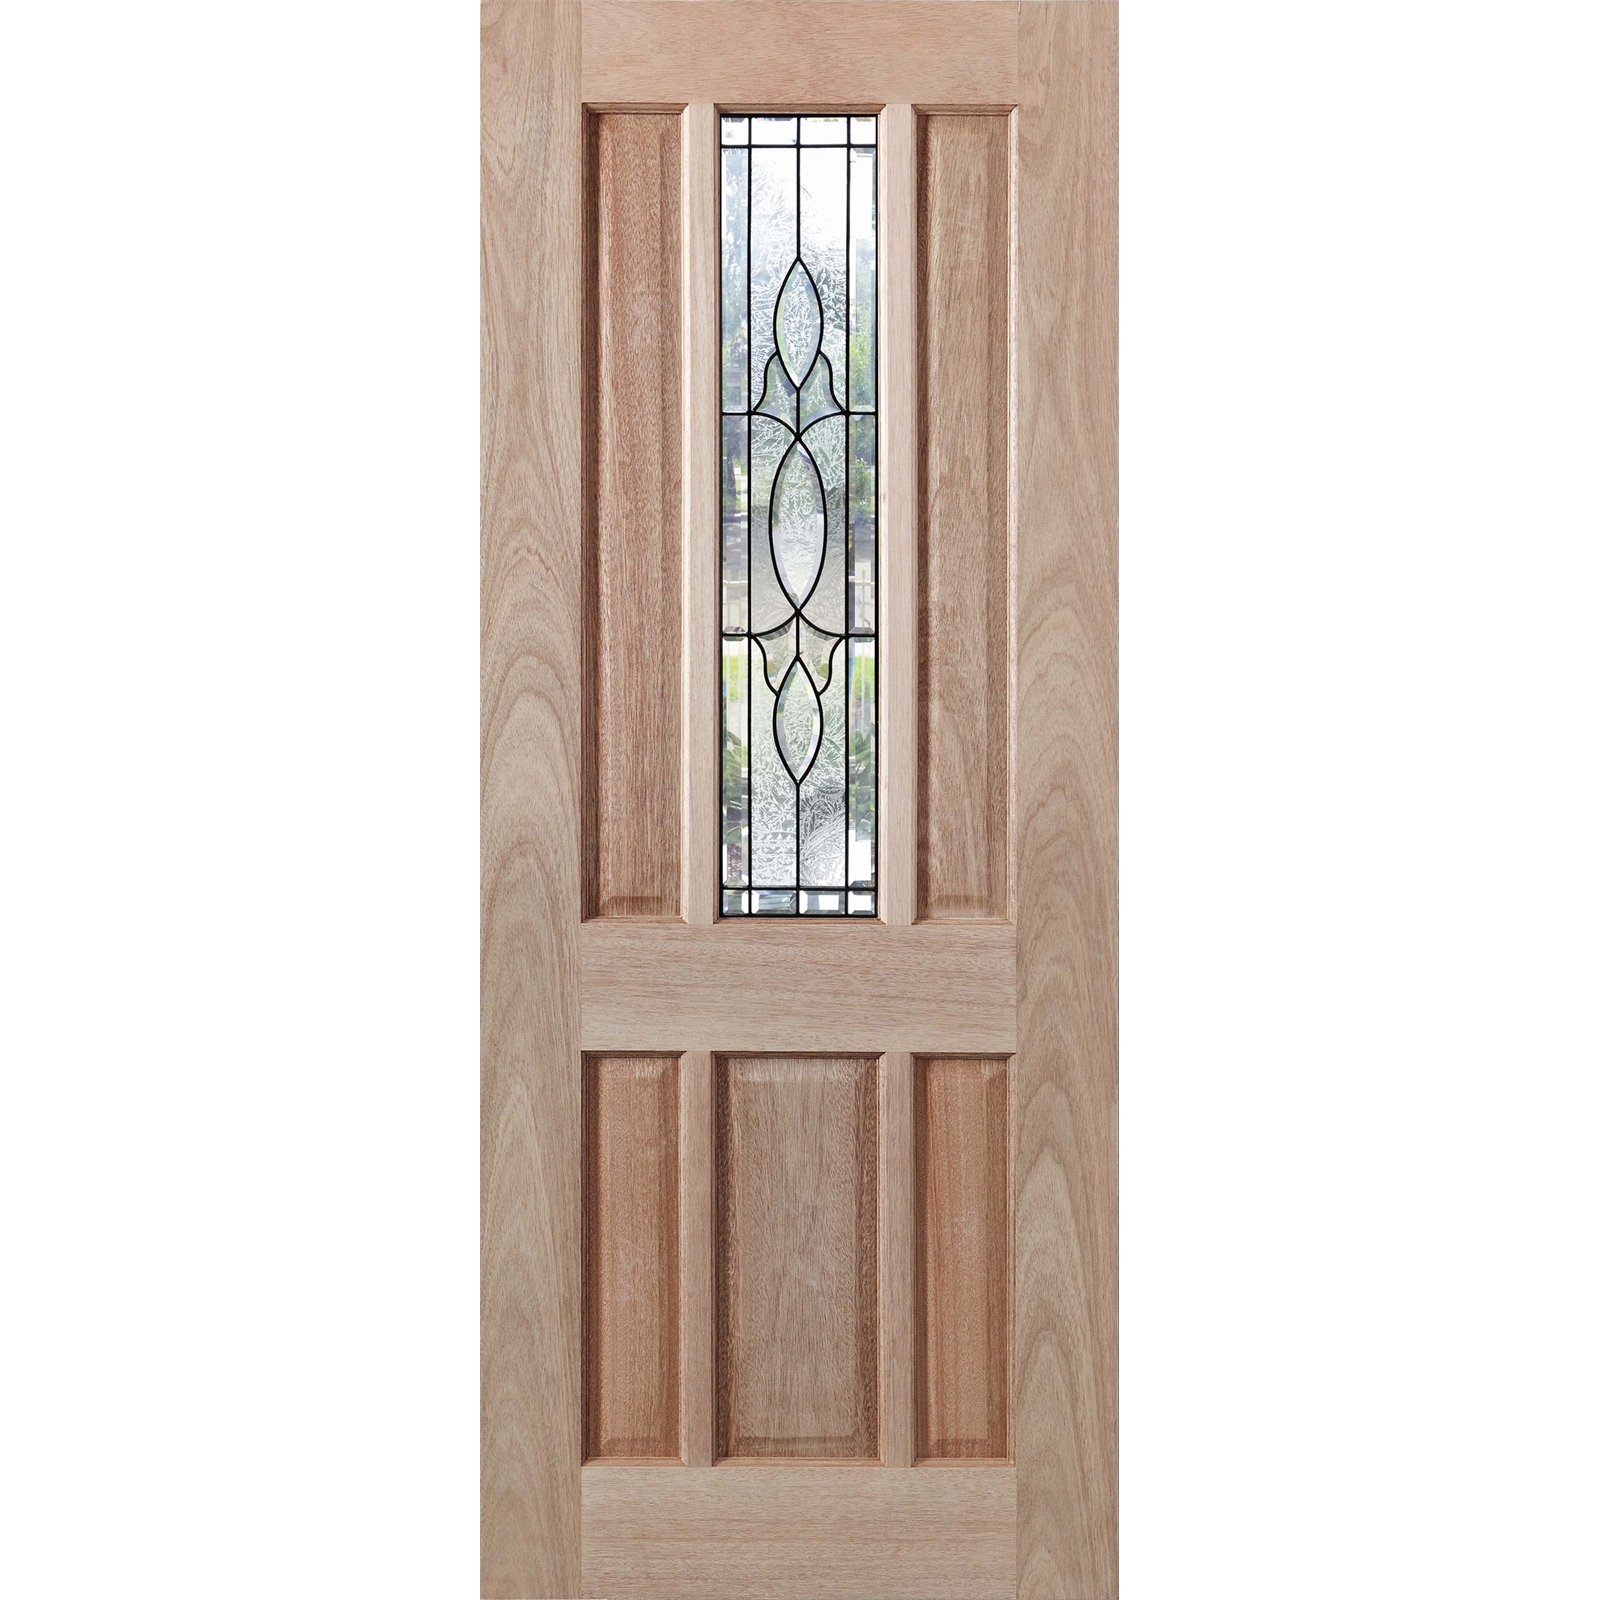 Woodcraft Doors 2040 x 820 x 40mm Hamlett Entrance Doors With Teardrop Glass